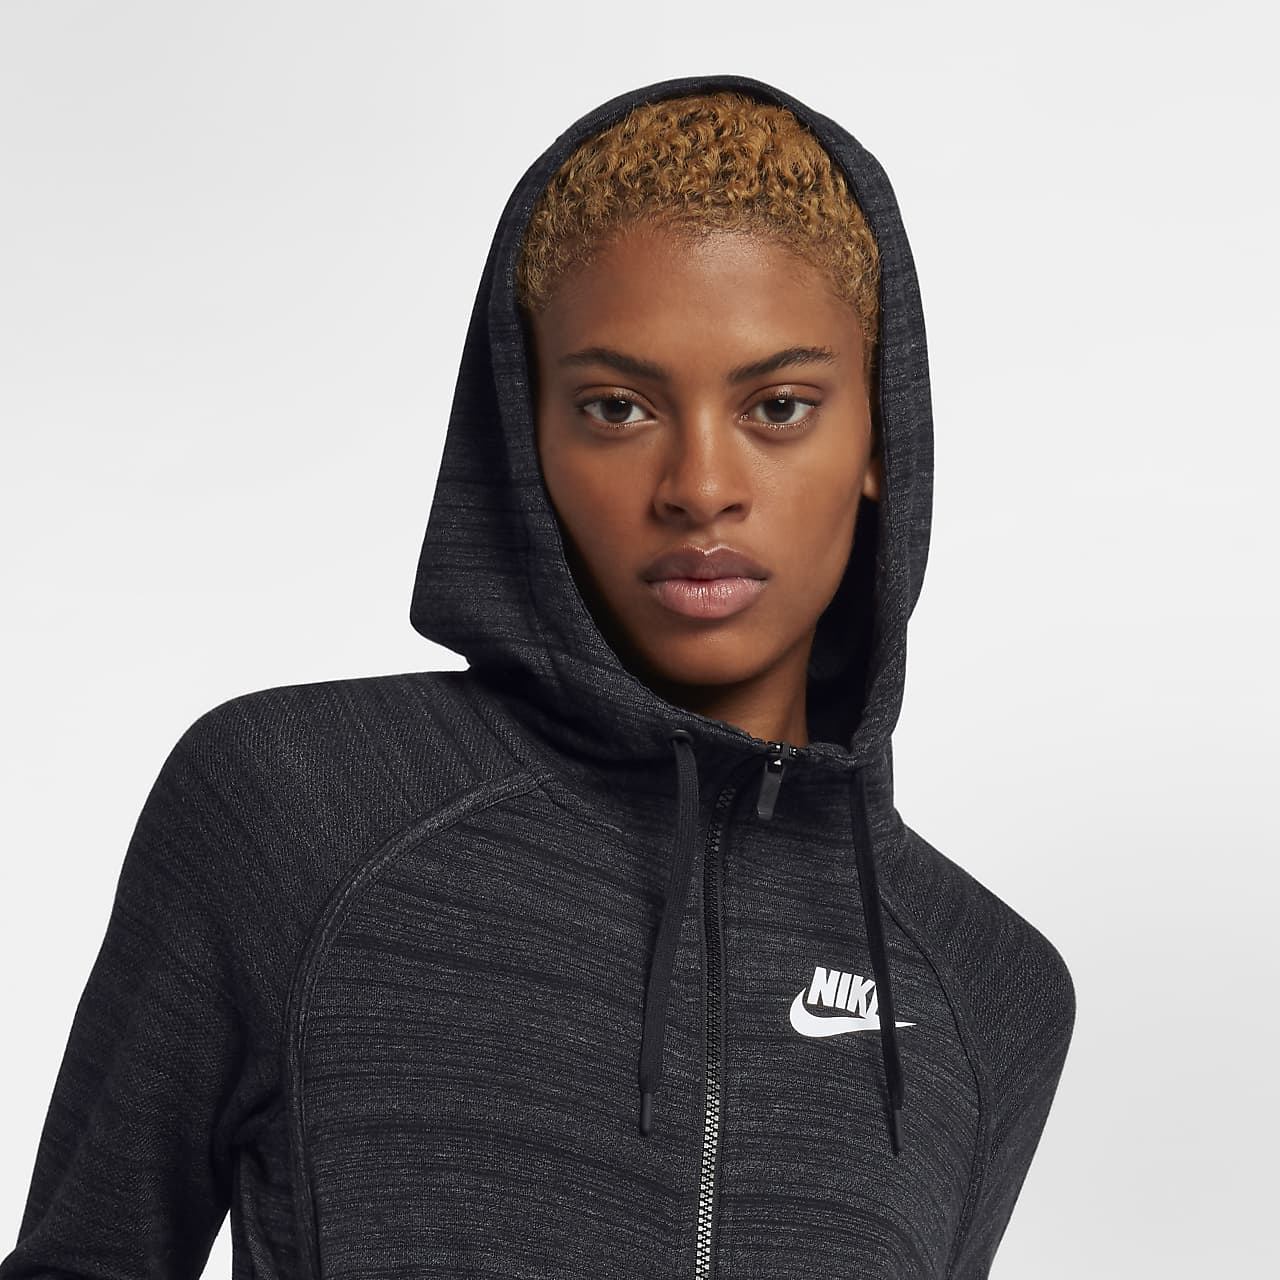 Onvoorziene omstandigheden Hover Premedicatie Nike Sportswear Advance 15 Women's Knit Jacket. Nike IL